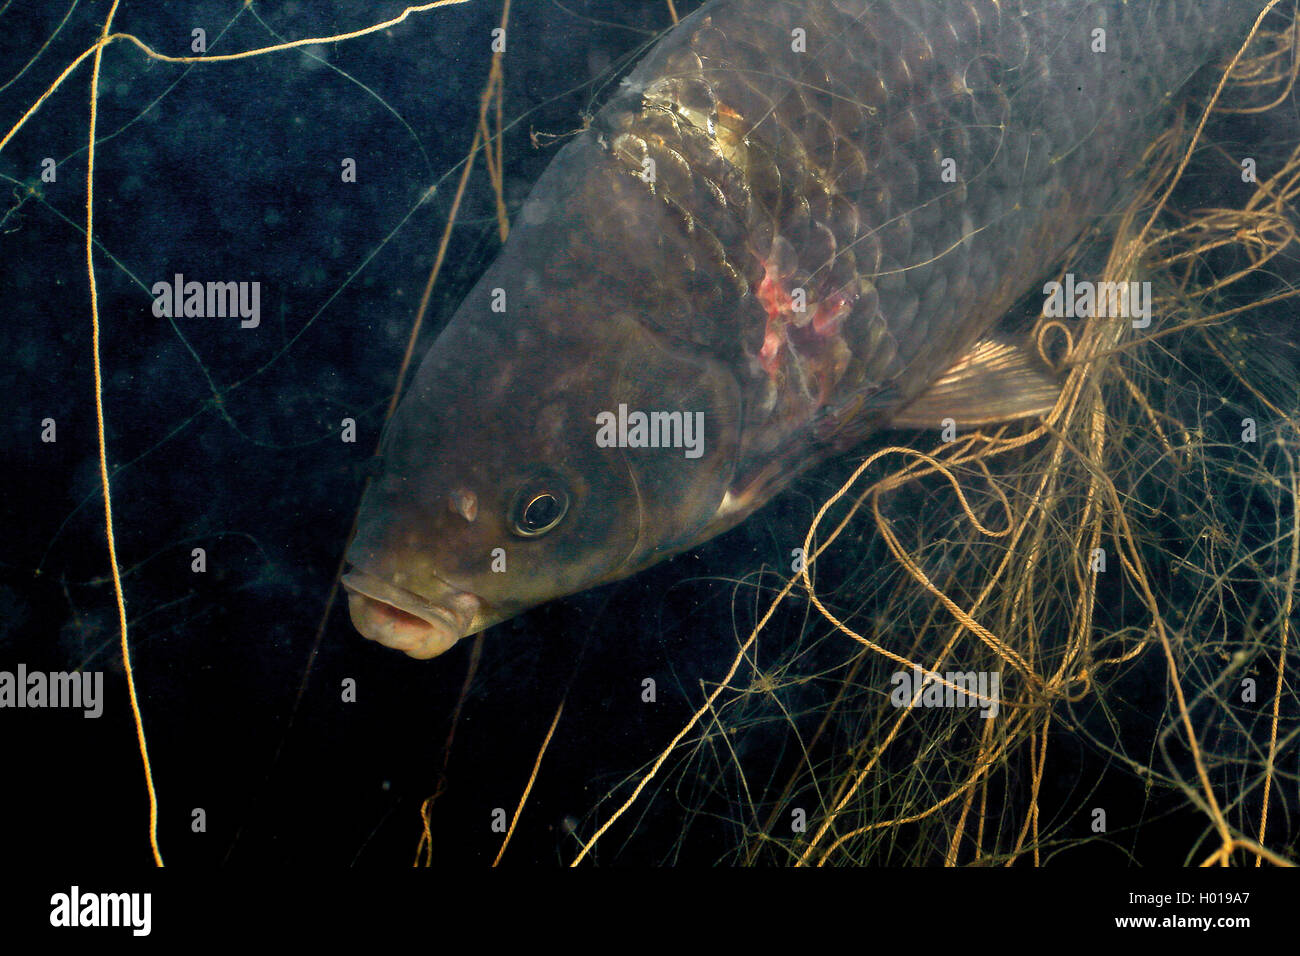 La carpa, la carpa común europeo, la carpa (Cyprinus carpio), carpas en una net, Rumania, Delta del Danubio Foto de stock